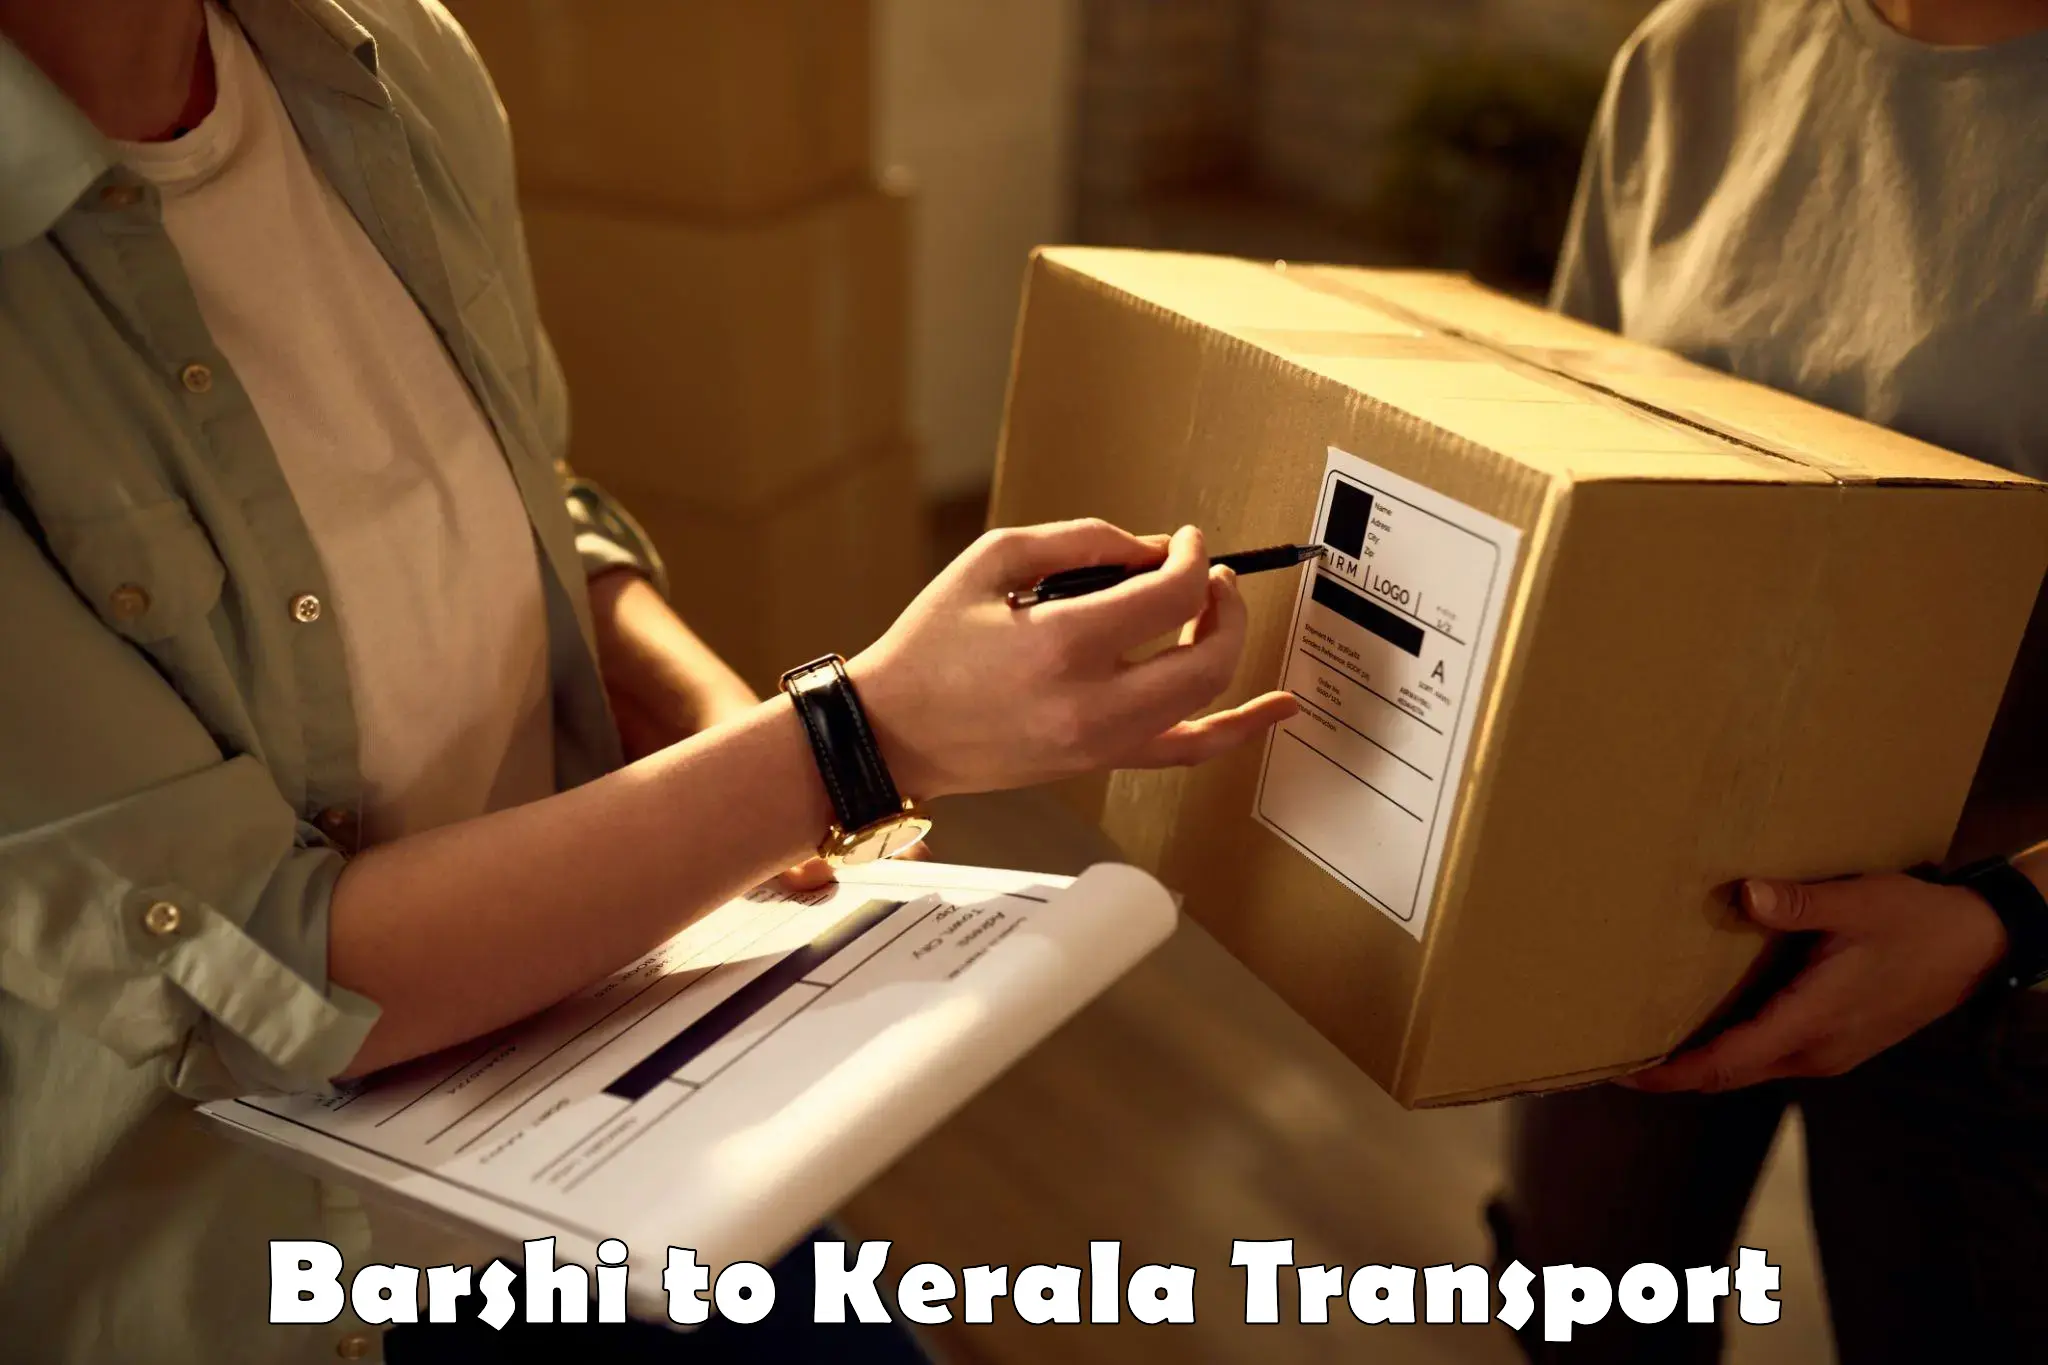 Furniture transport service Barshi to Kothamangalam